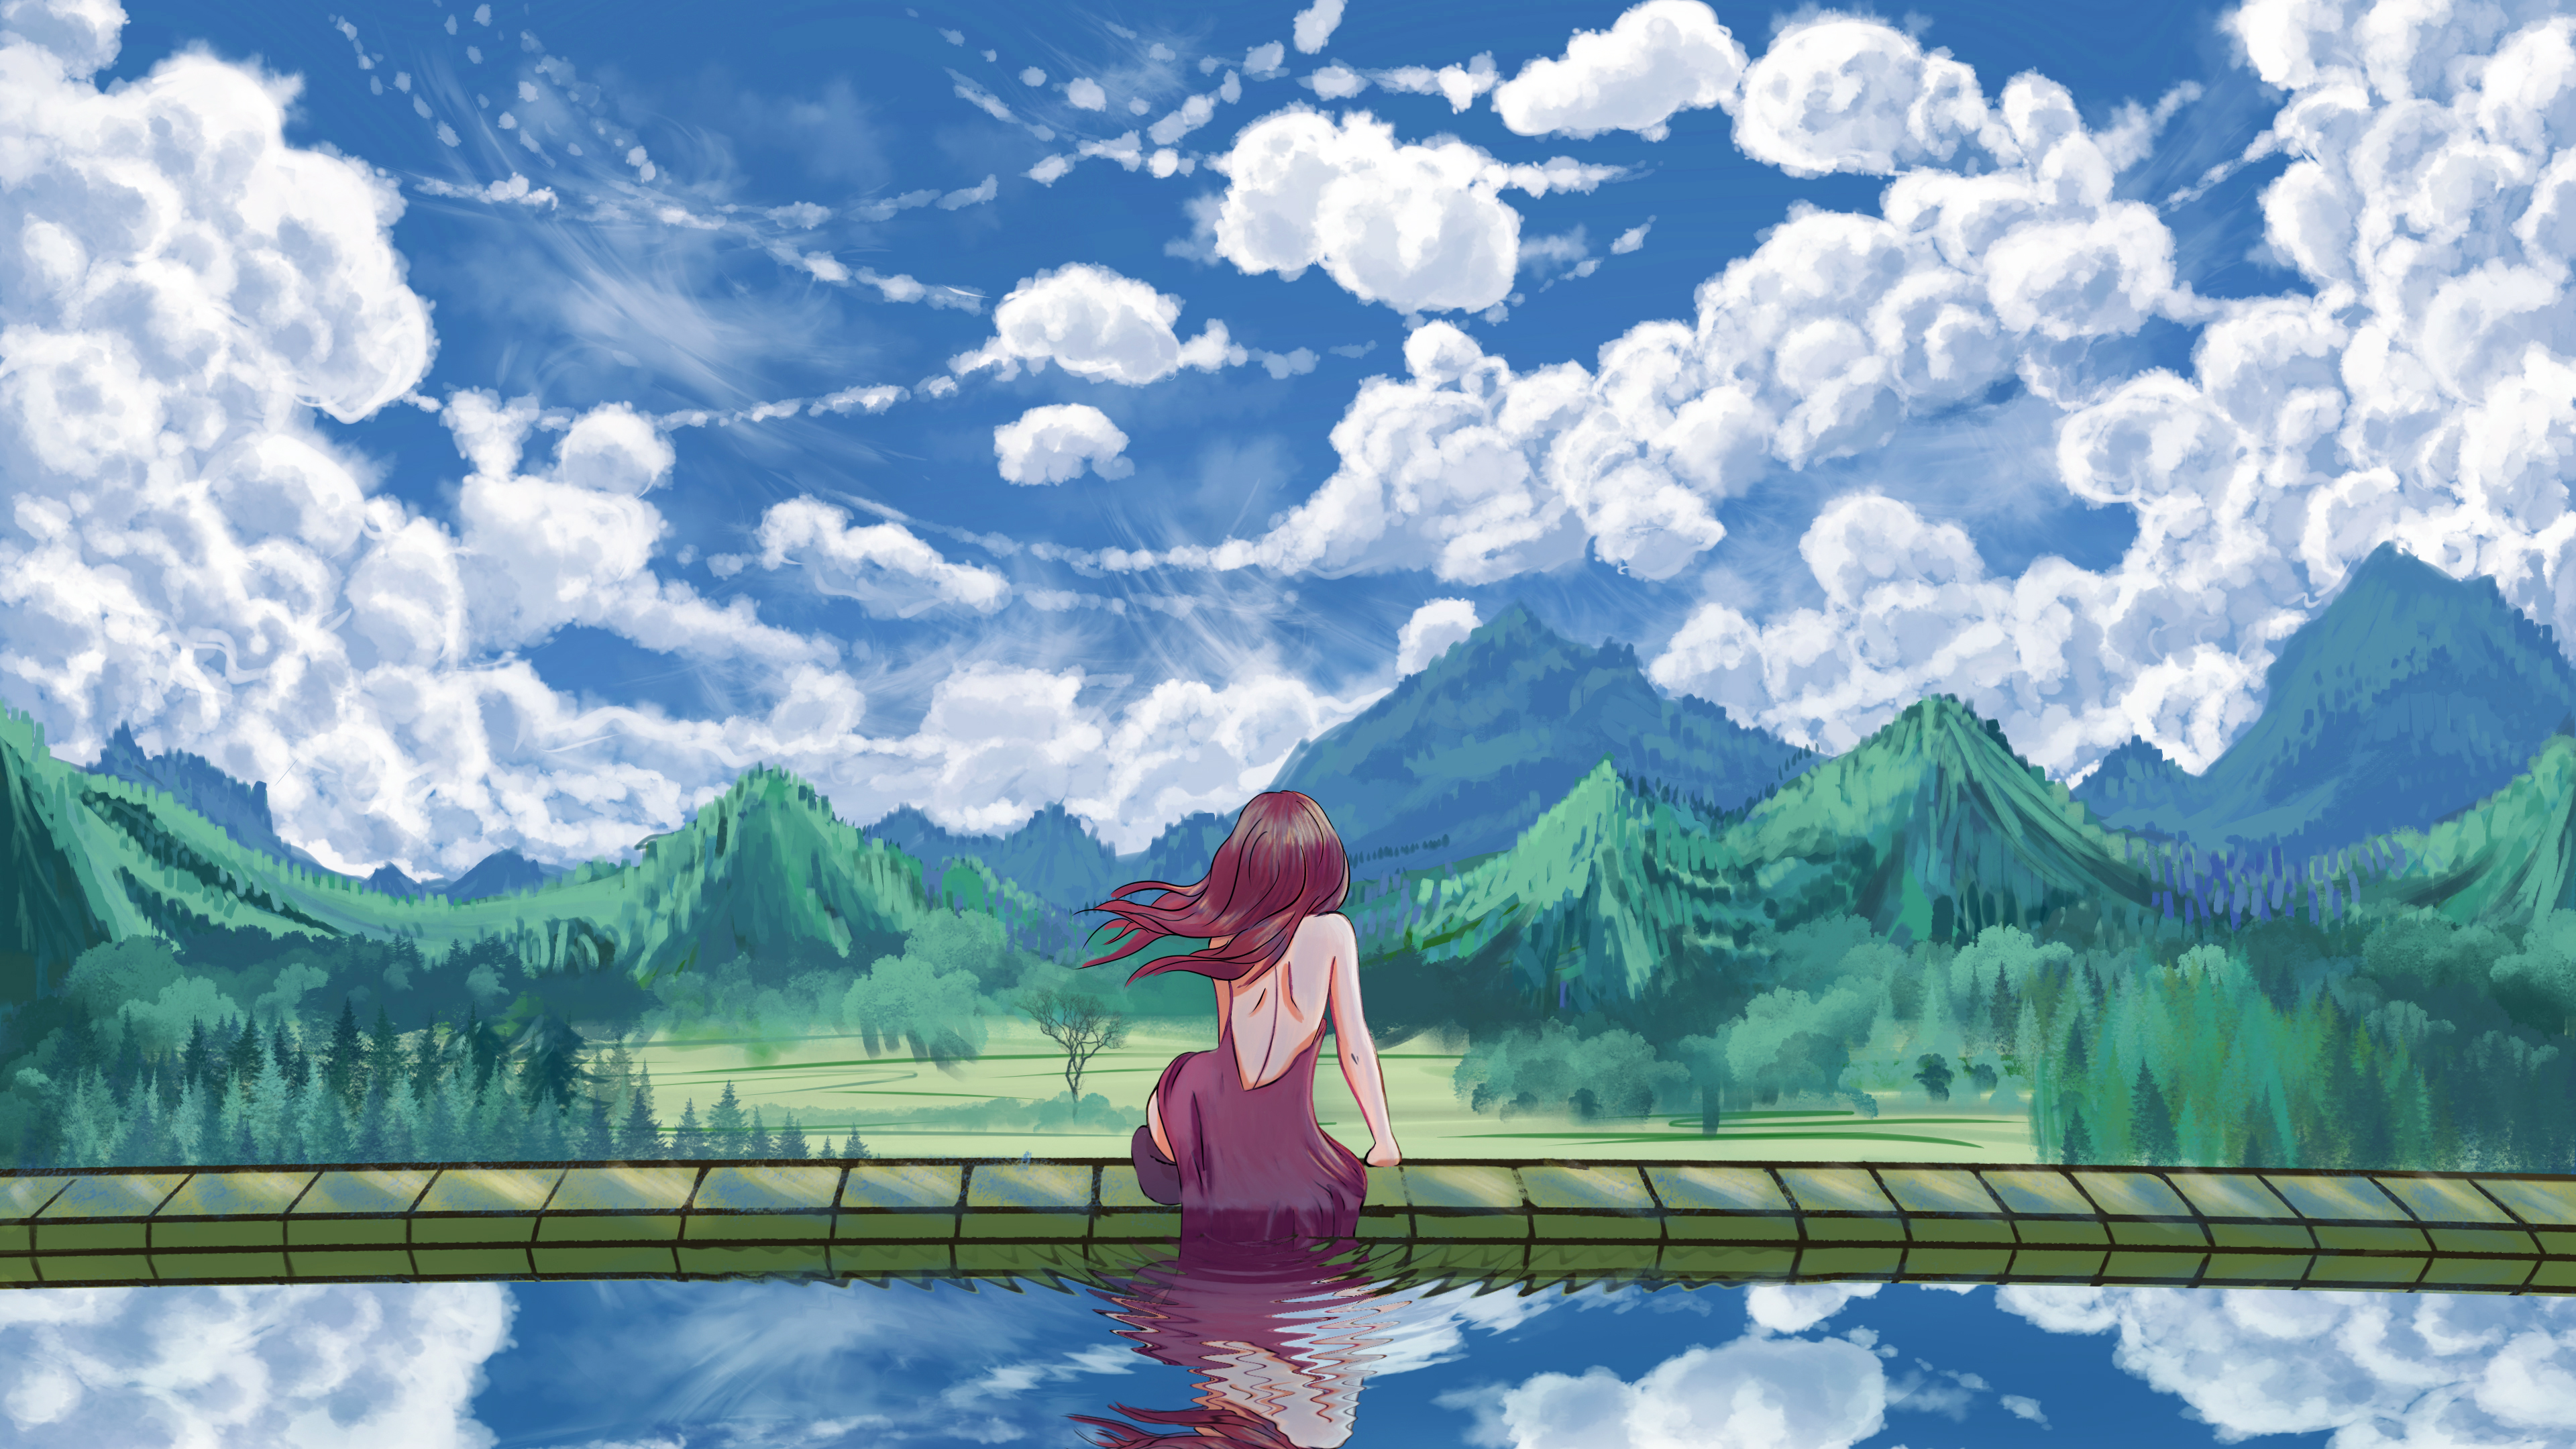 Hintergrund Anime (Anime background): Cùng chiêm ngưỡng những bức tranh nền Anime tuyệt đẹp, khiến bạn như lạc vào một thế giới đầy màu sắc và phép thuật. Hãy cùng đắm chìm và tận hưởng không khí của những bộ Anime ưa thích bằng những Hintergrund Anime đẹp mắt.